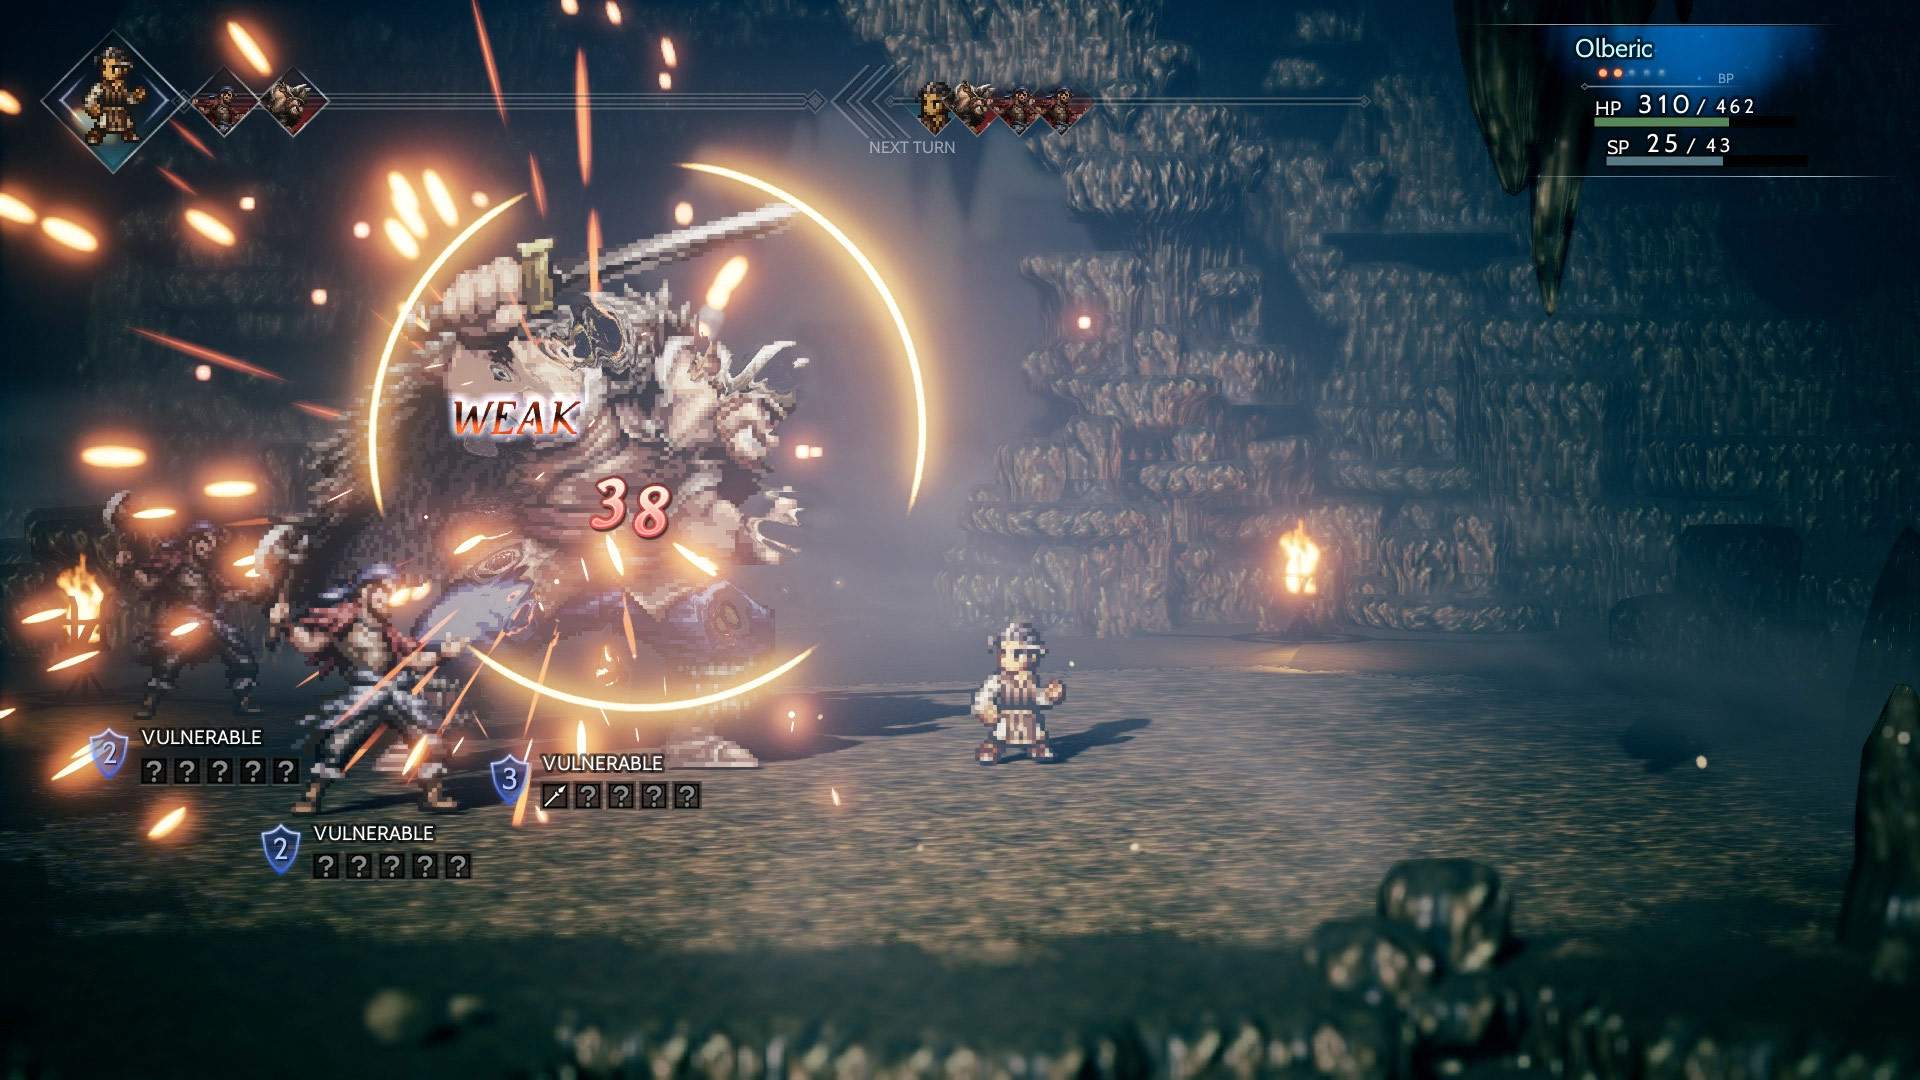 Der Screenshot zeigt Olberic, der in einem düsteren Dungeon drei Gegnern angreift.